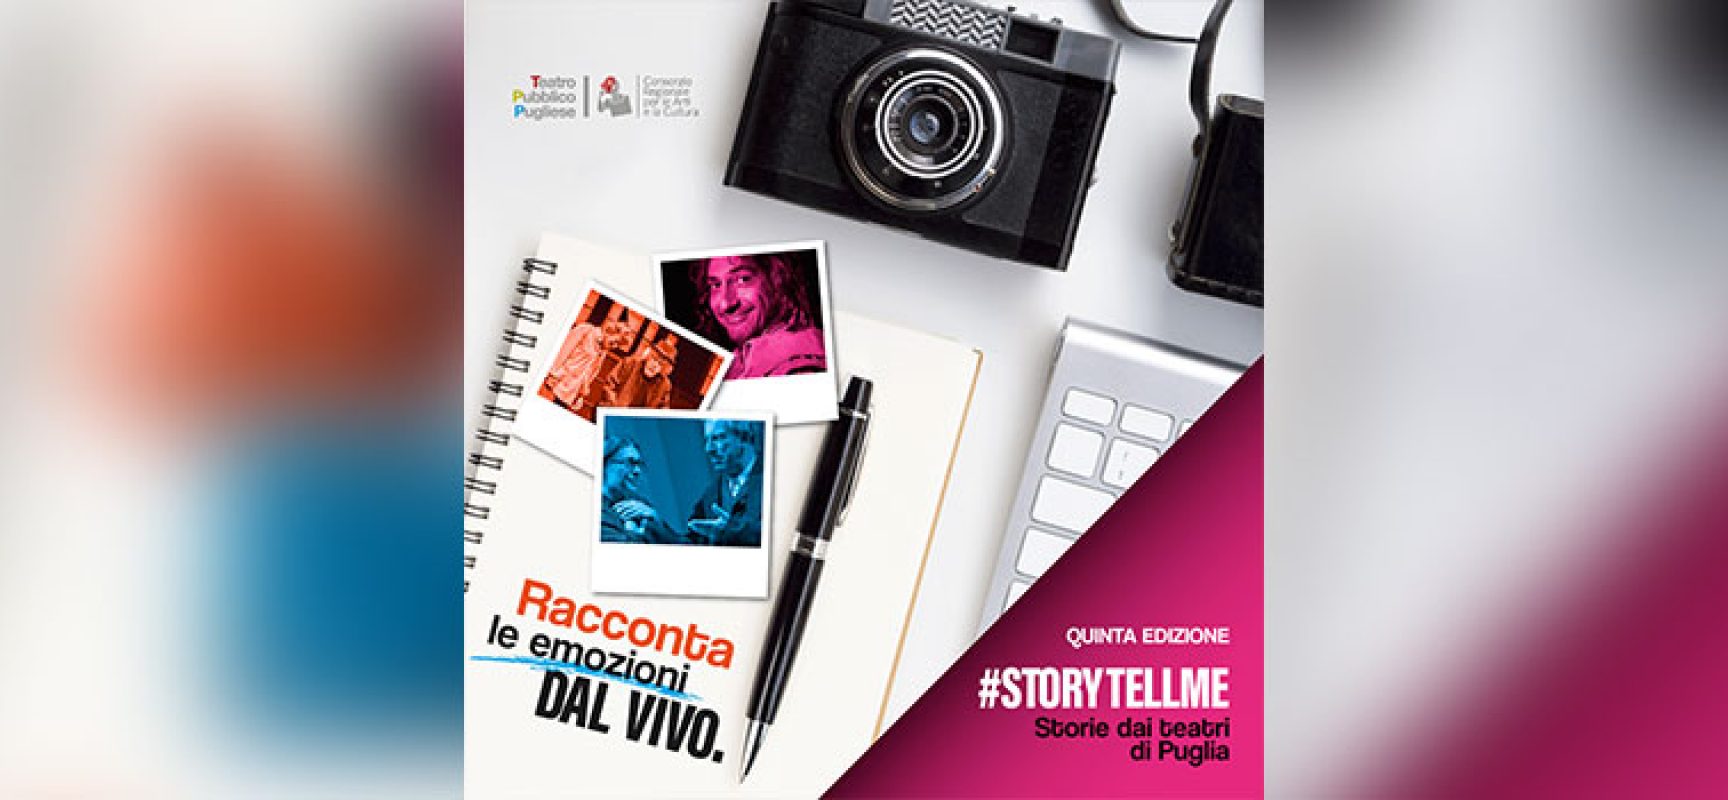 Online il nuovo bando per partecipare a “Storytellme” / DETTAGLI